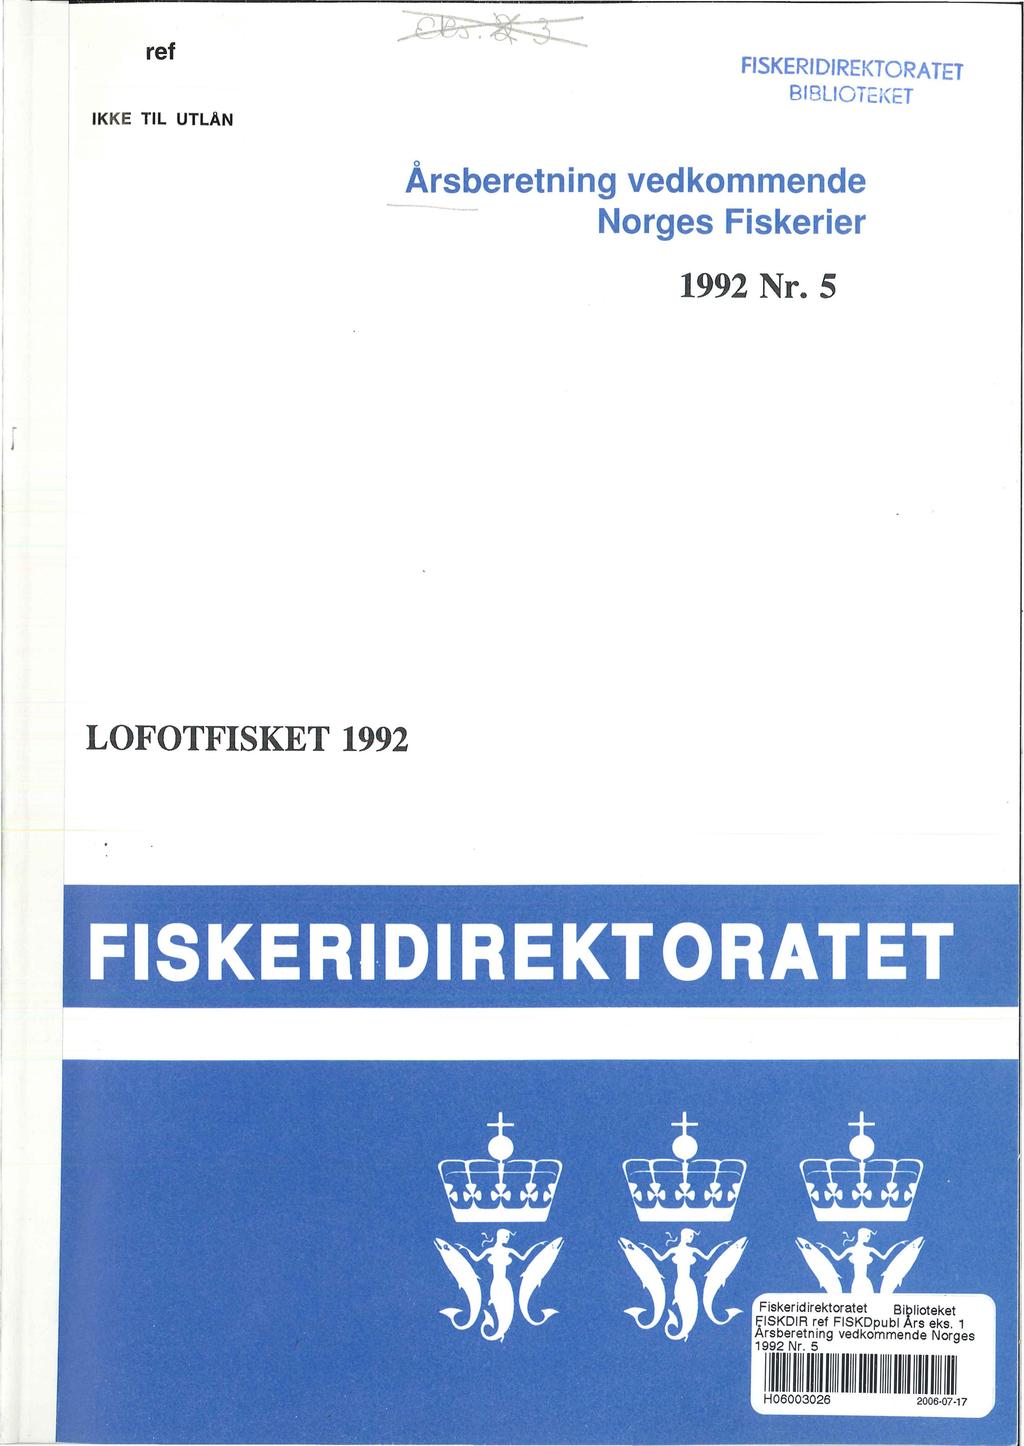 ref IKKE TIL UTLAN FISKERIDIREKTORATET BIBLIOTEKET Årsberetning vedkommende - Norges Fiskerier 1992 Nr.